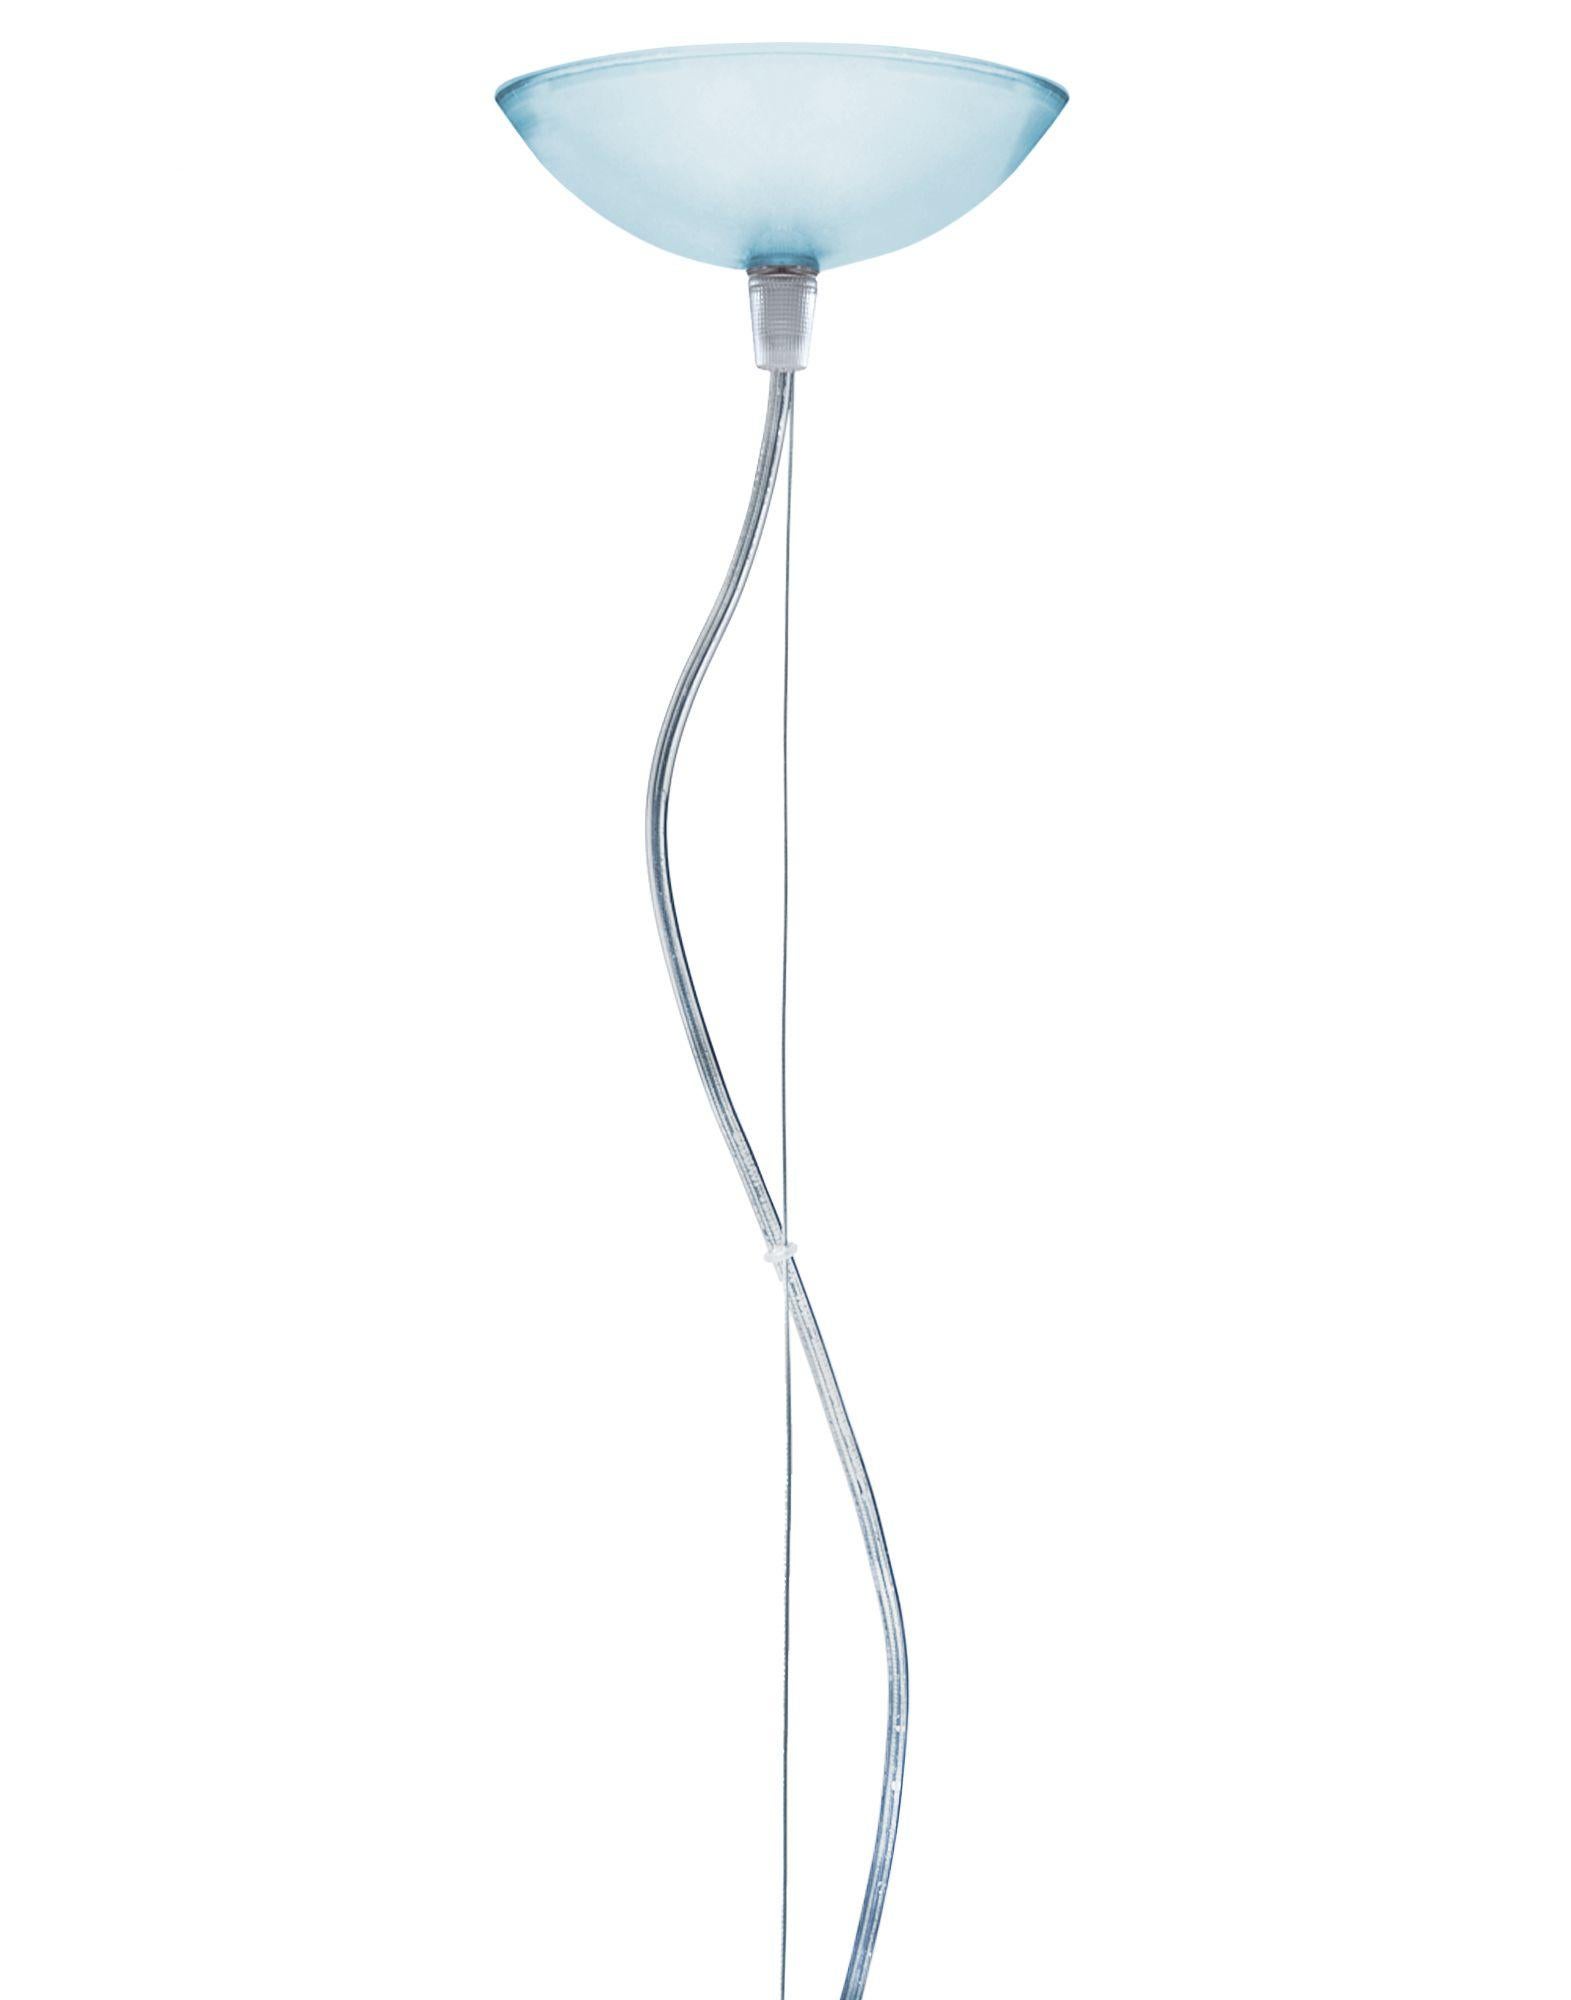 Lampe pendante FL/Y de petite taille en bleu ciel. Il s'agit d'une collection de lampes à suspension conçue par Ferruccio Laviani en 2002.

Dimensions : Hauteur de l'abat-jour : 11 po ; diamètre : 15 po ; poids unitaire : 1,08 kg. Fabriqué en :